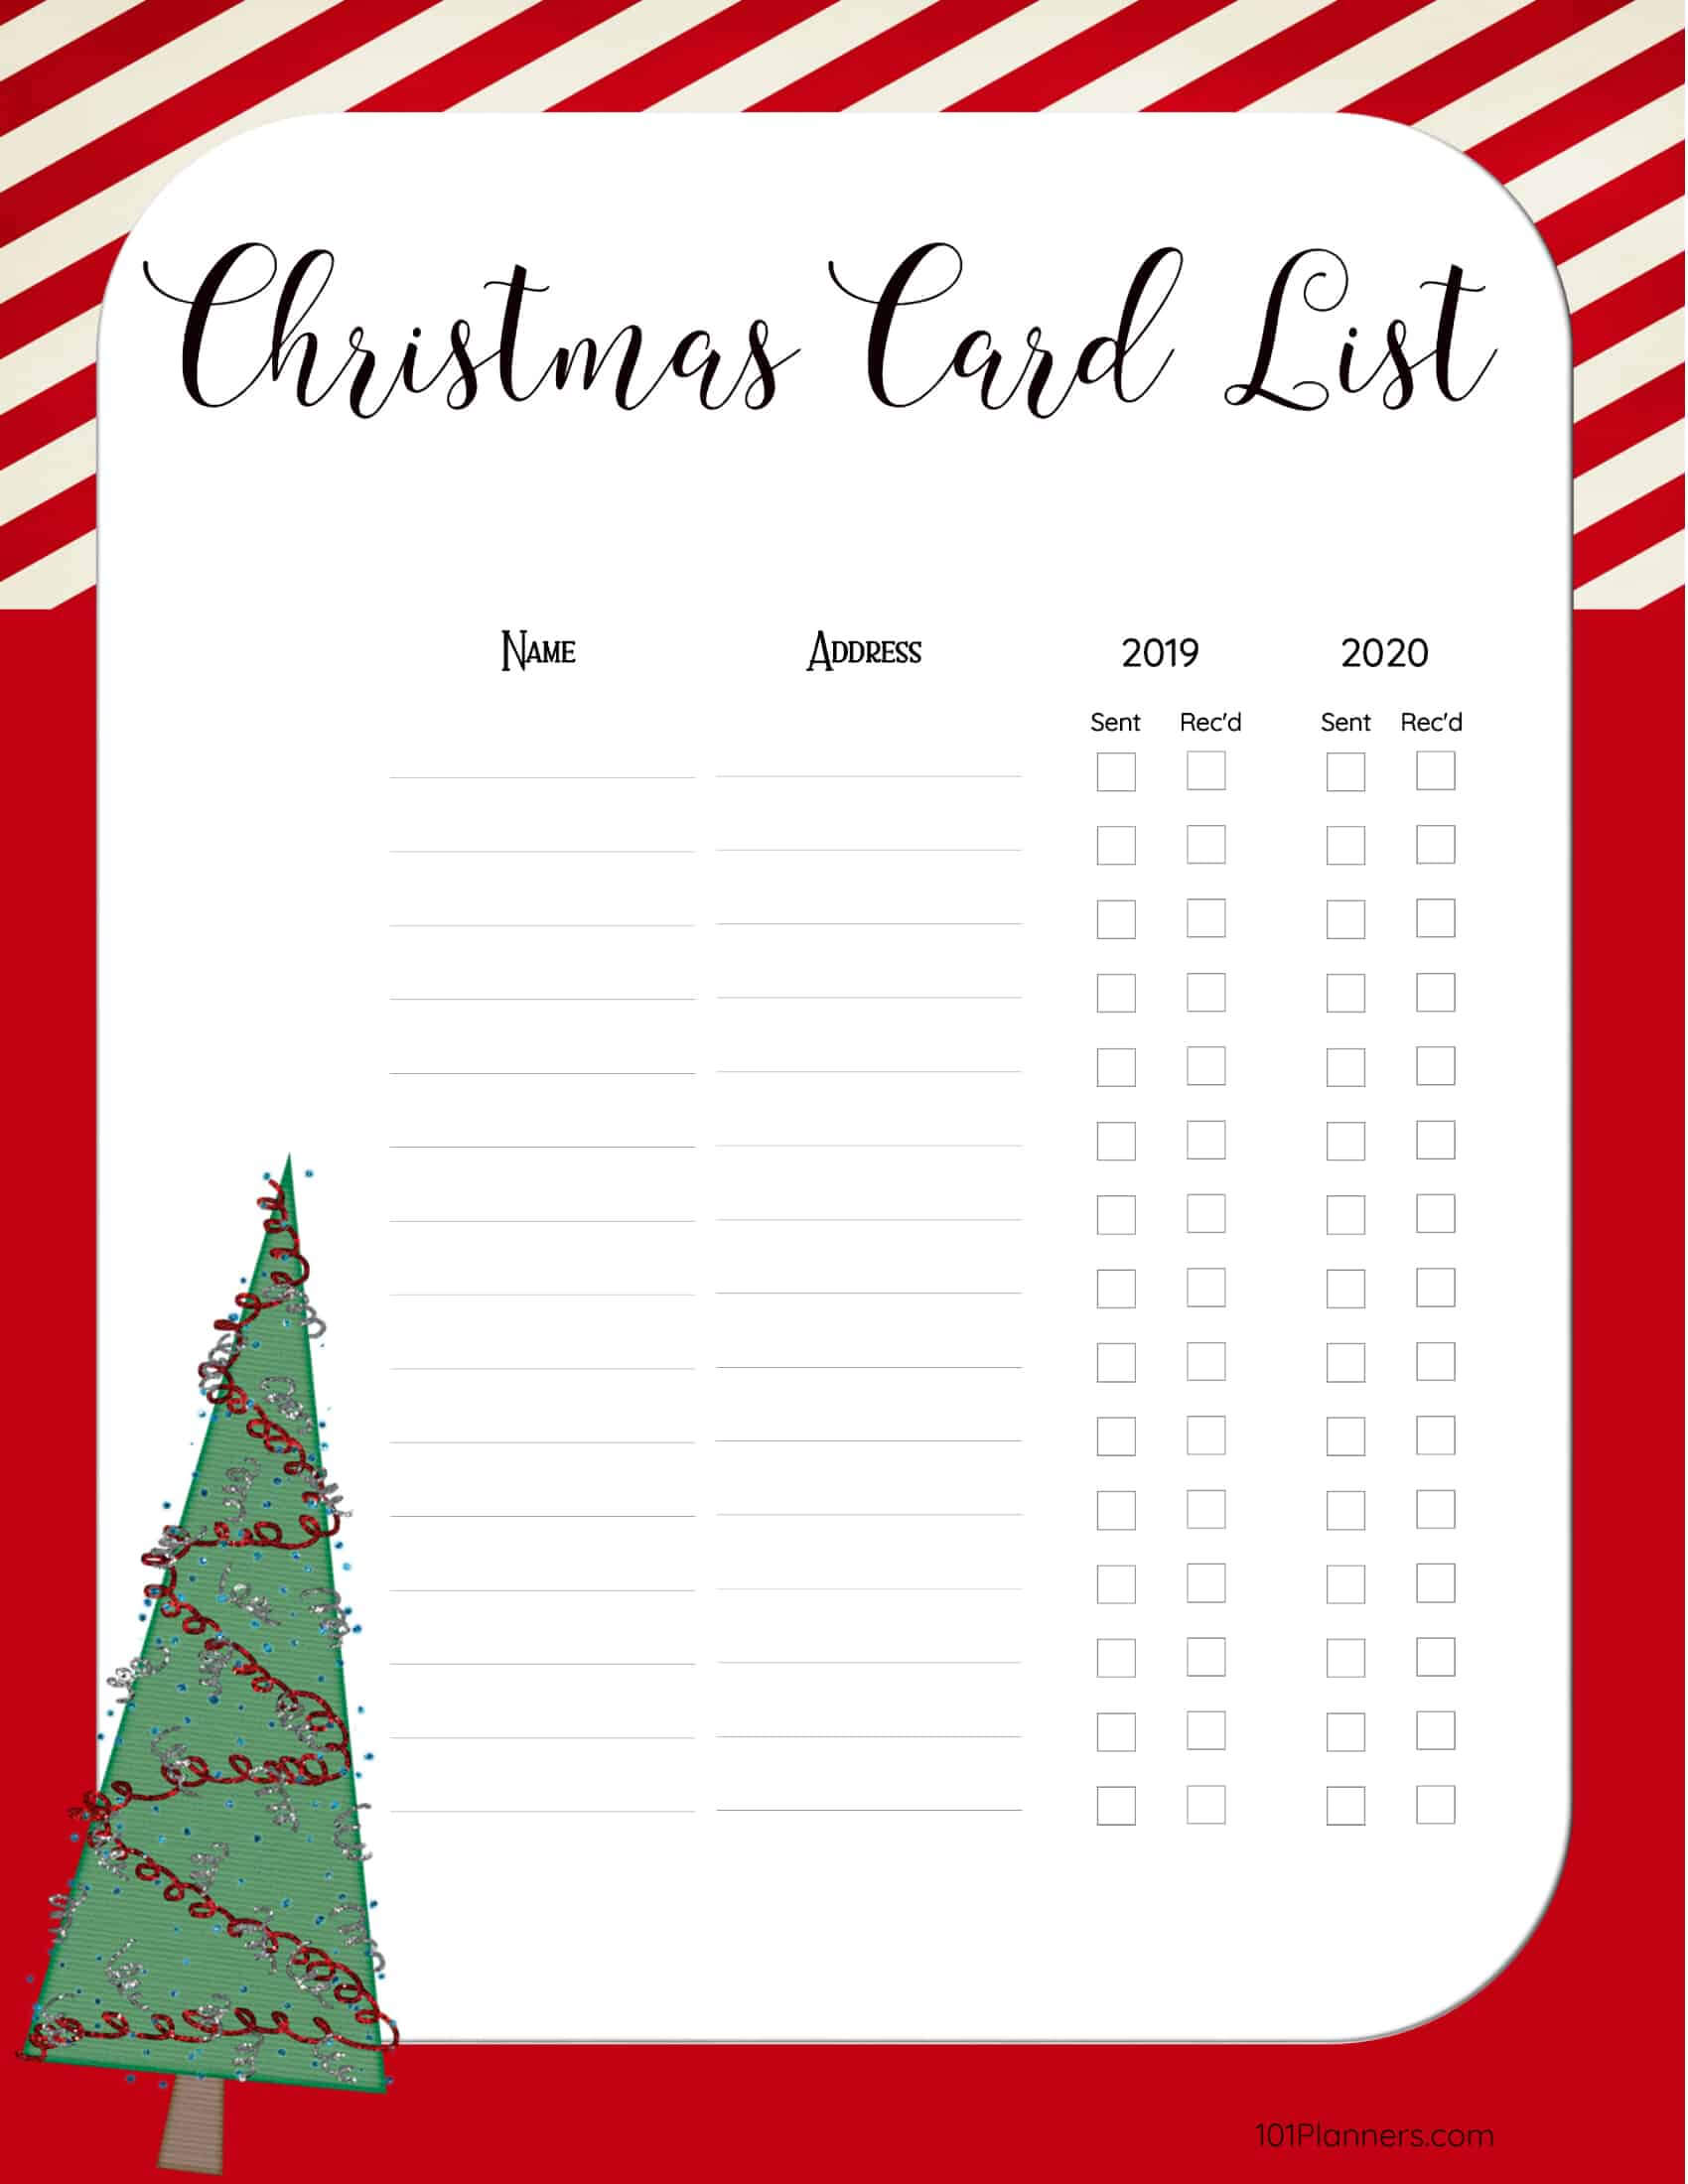 Free Printable Christmas Gift List Template Regarding Christmas Card